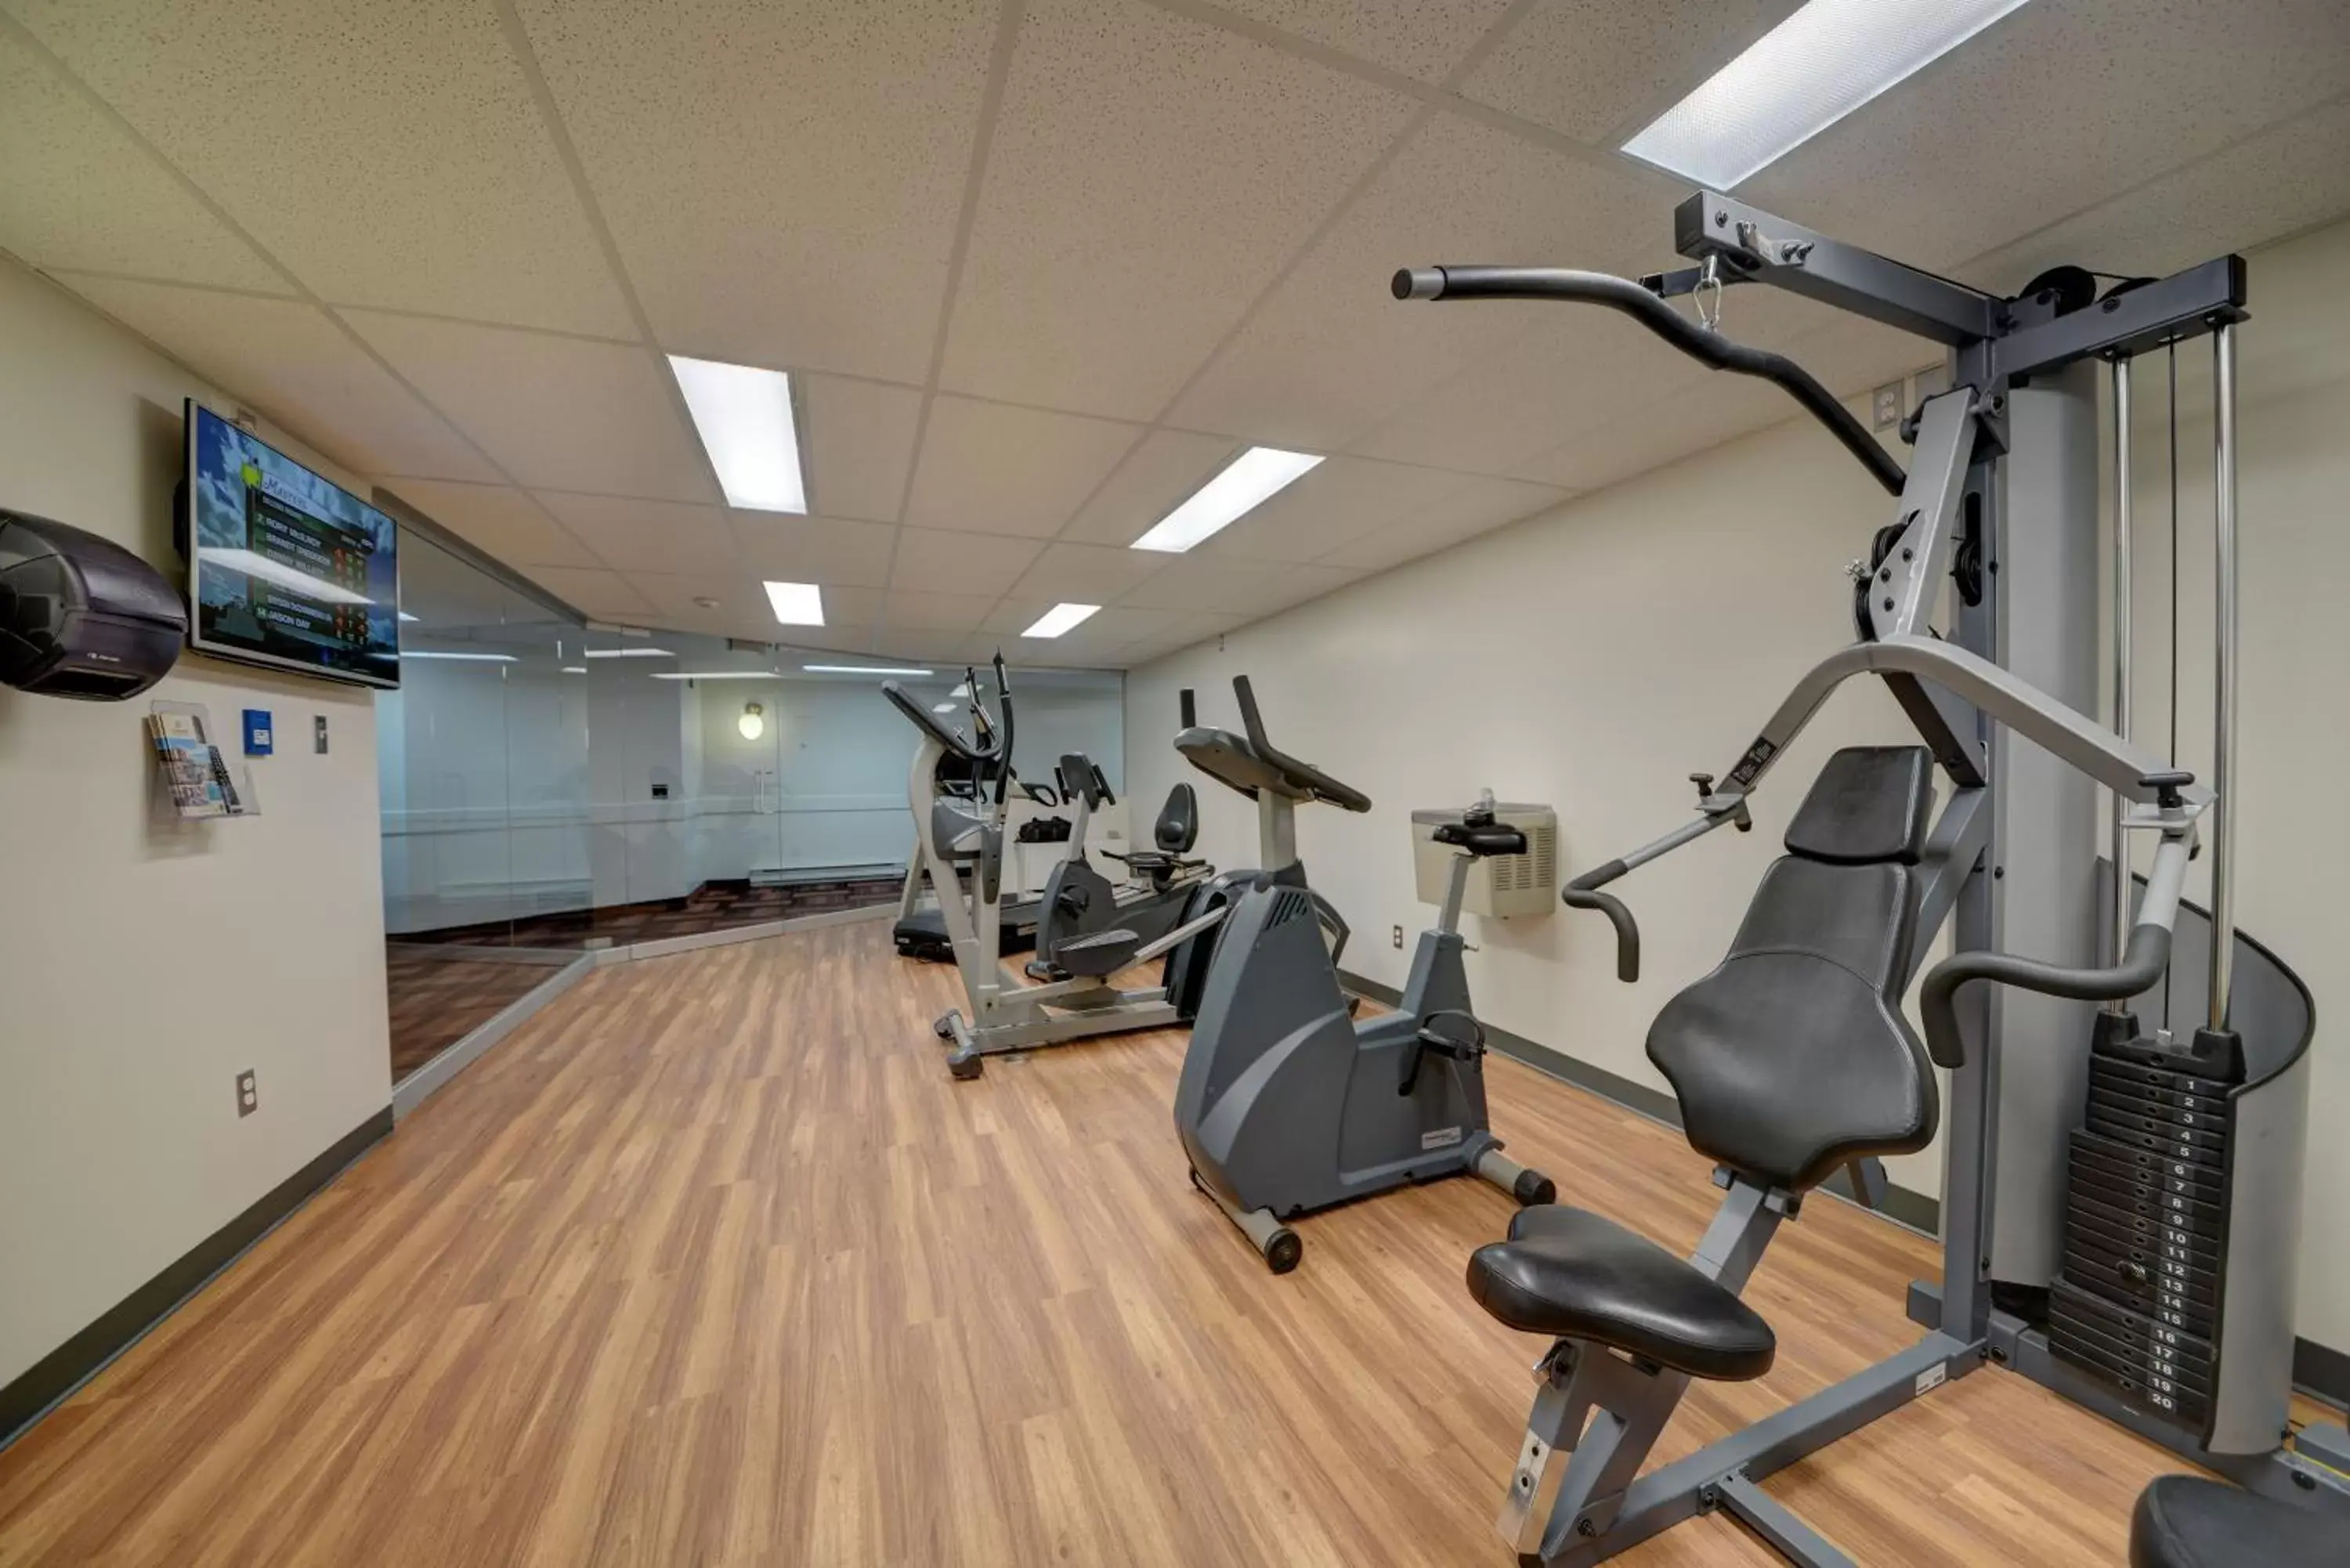 Fitness centre/facilities, Fitness Center/Facilities in Hôtel Universel, Centre de congrès Rivière-du-Loup